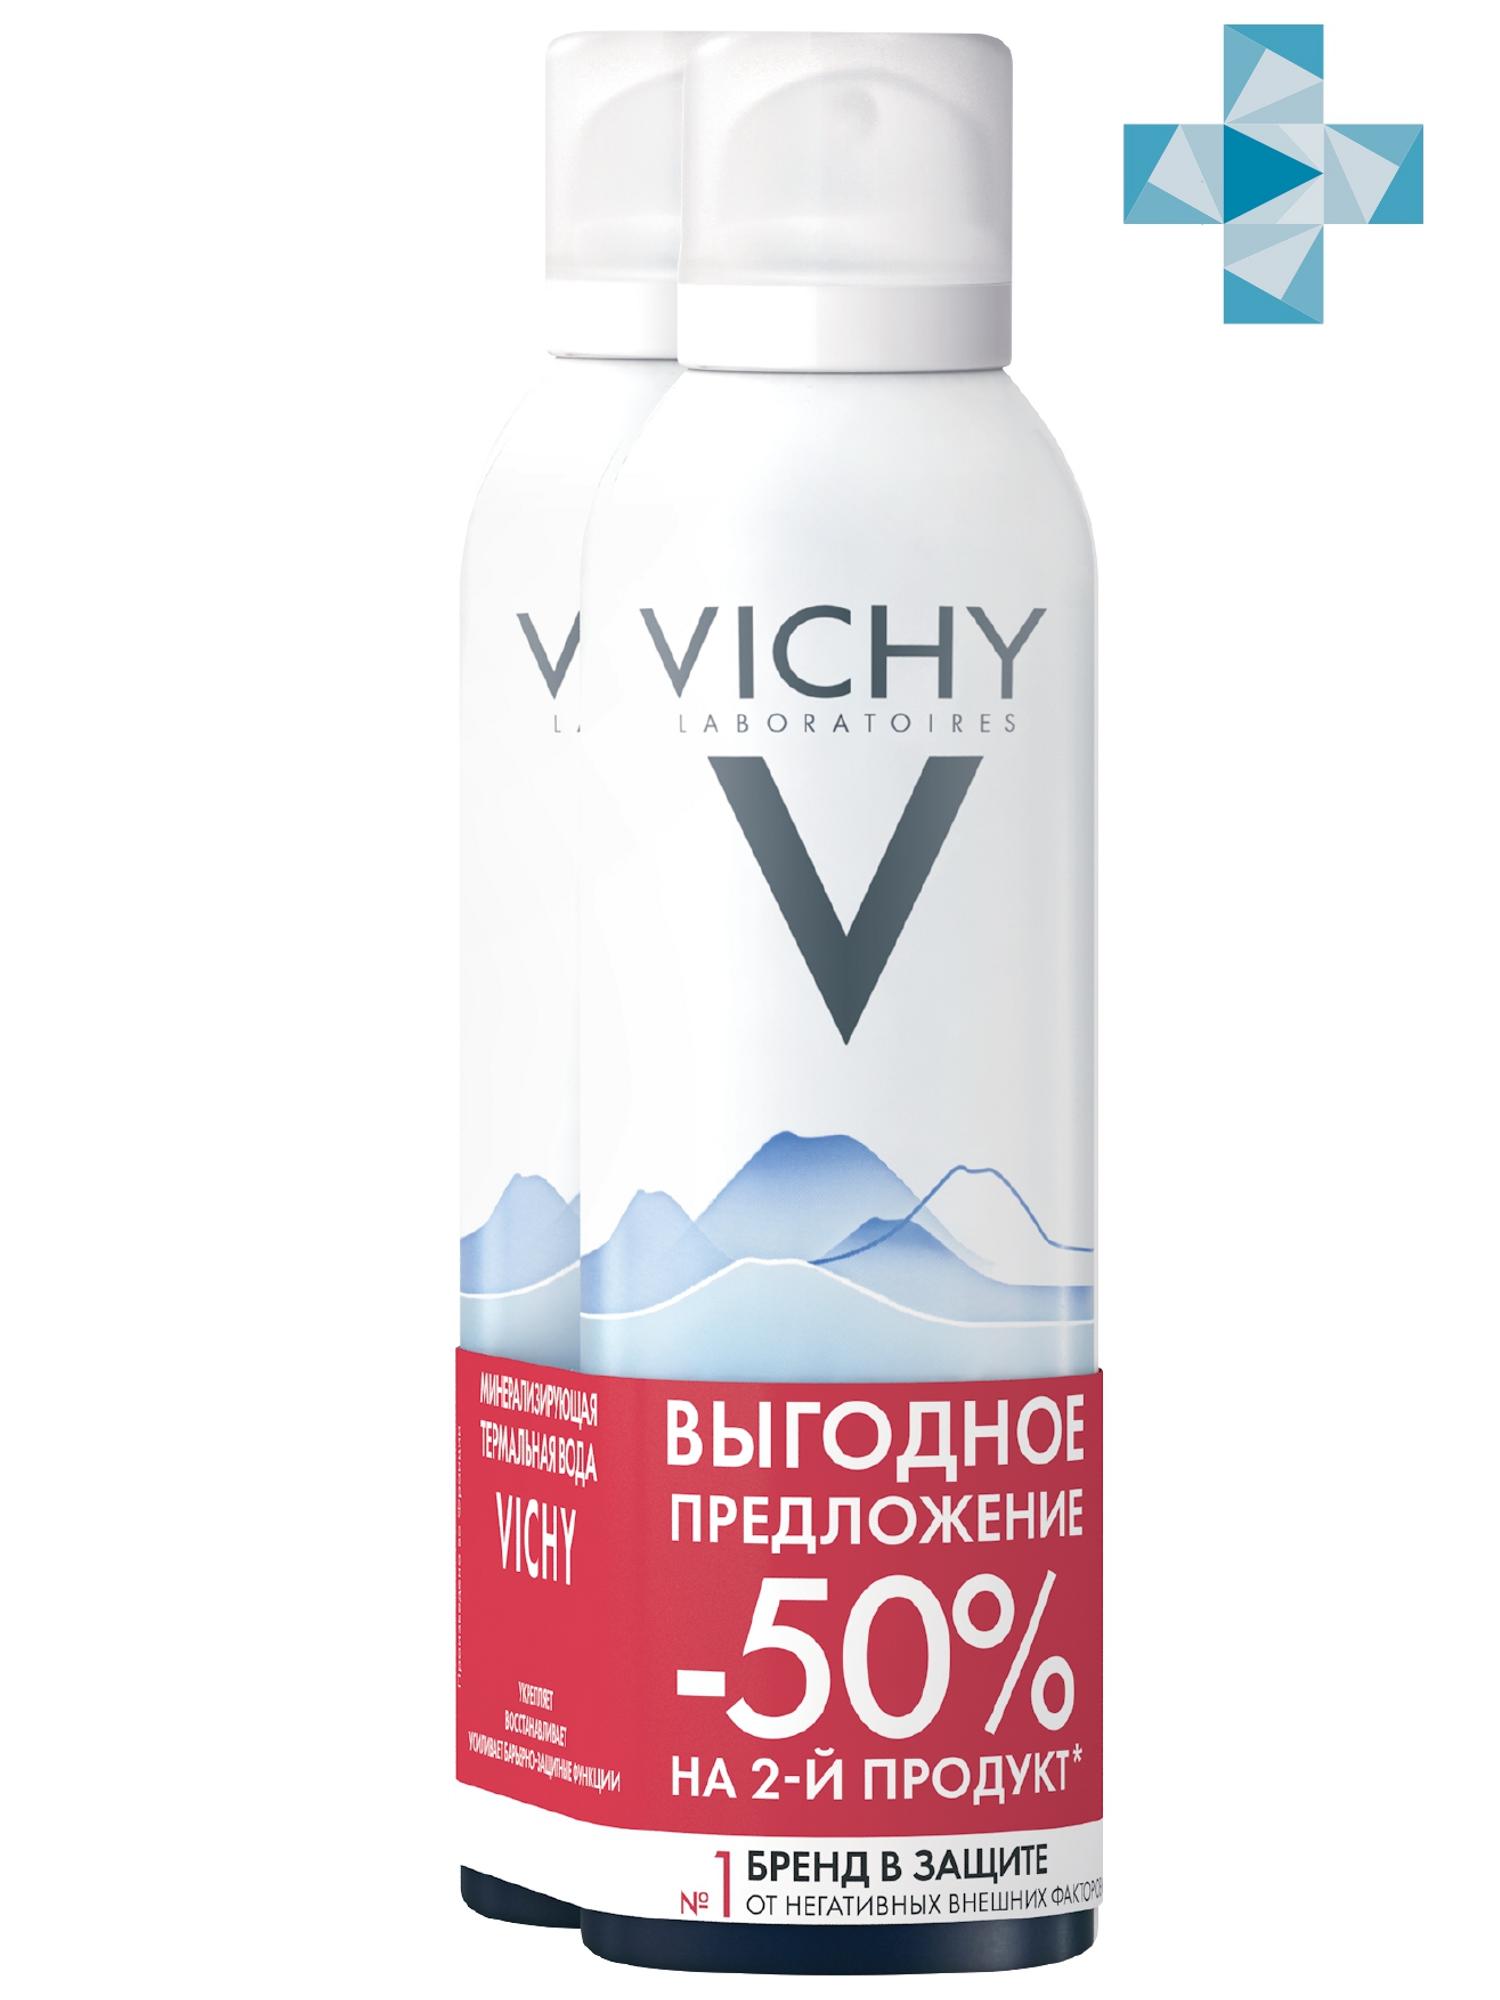 Виши Набор (термальная вода Vichy Спа 150 мл х 2 шт) (Vichy, Thermal Water Vichy) фото 0